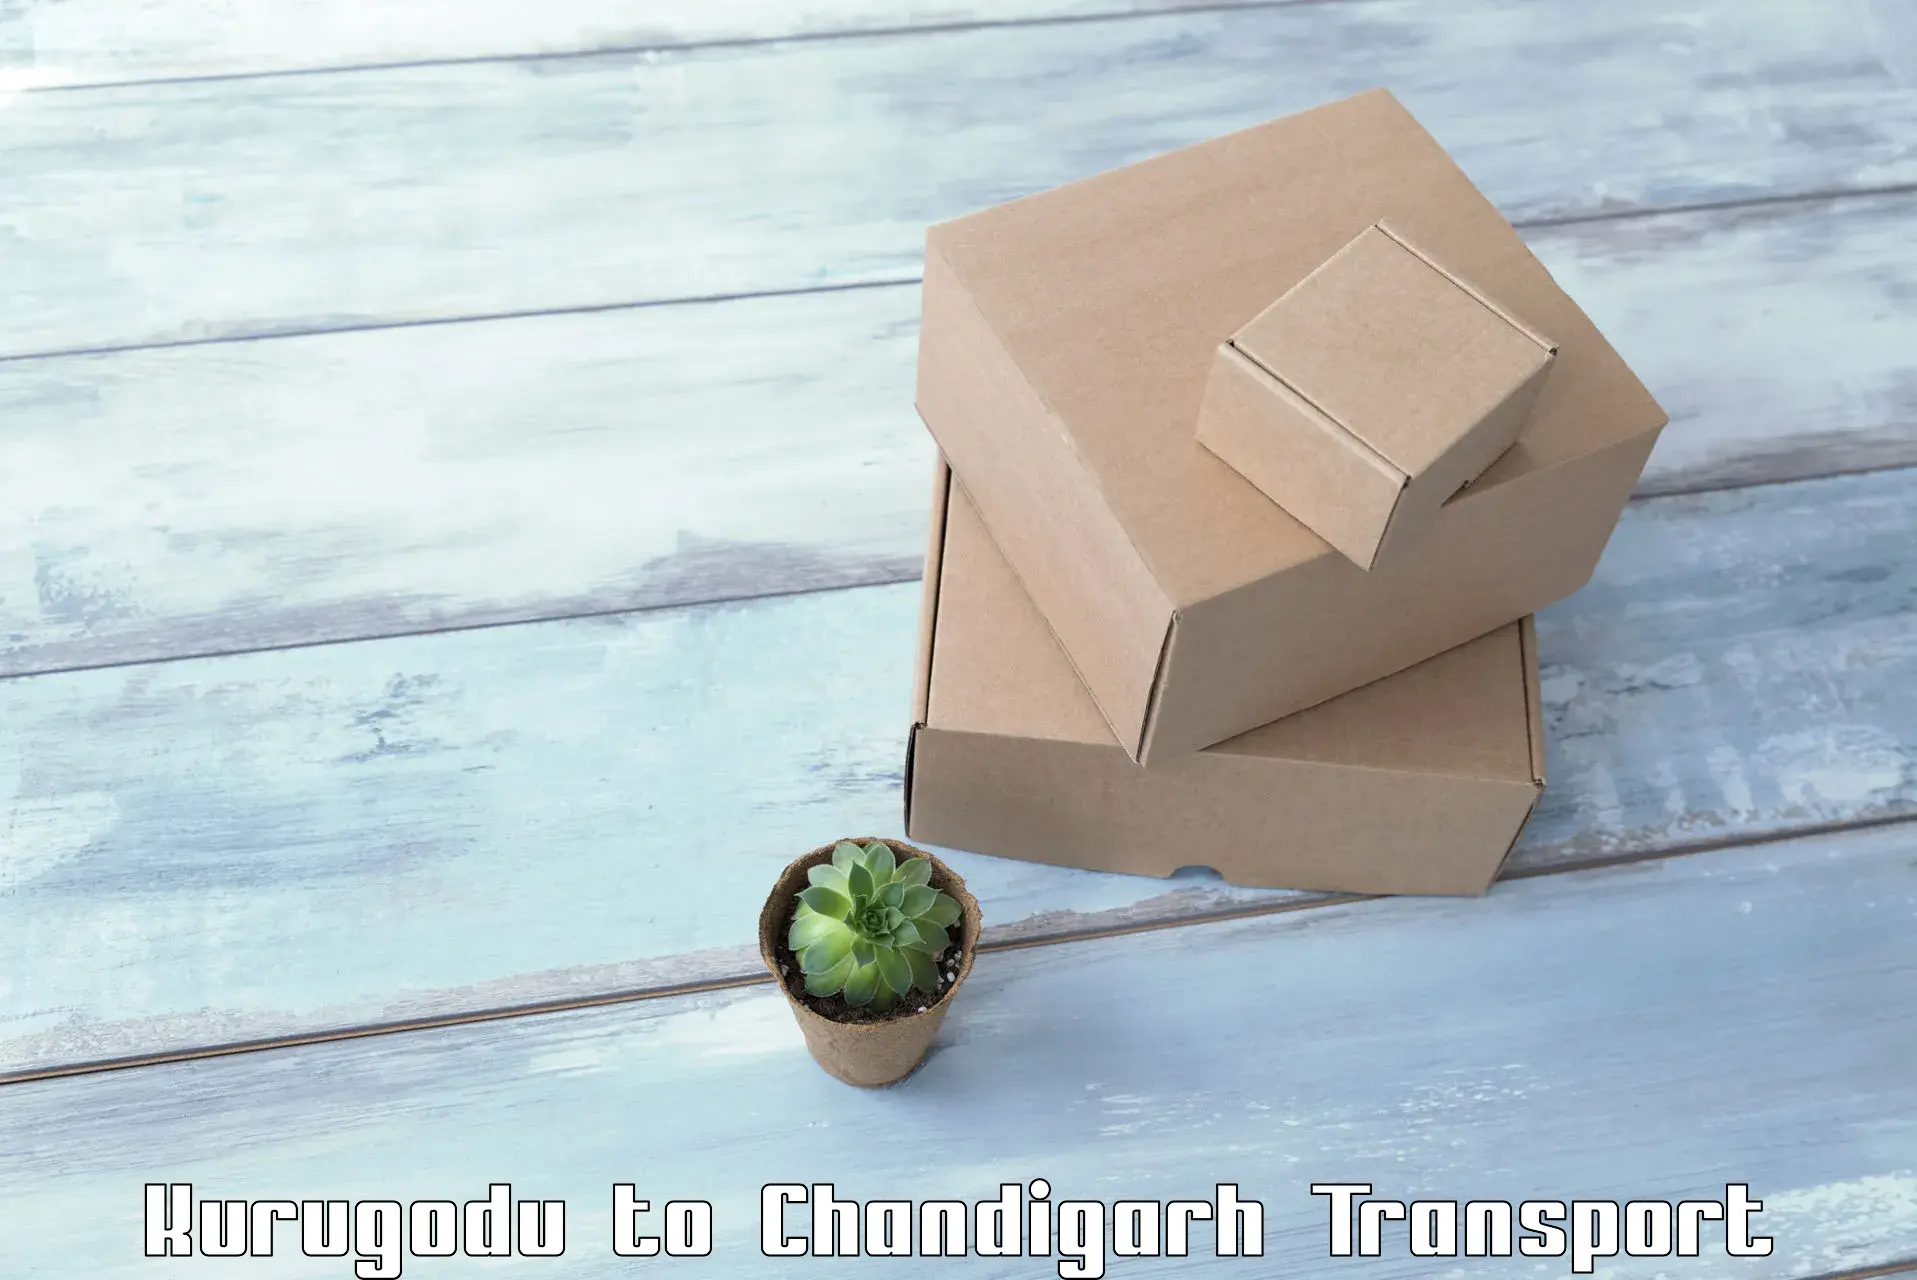 Furniture transport service Kurugodu to Chandigarh